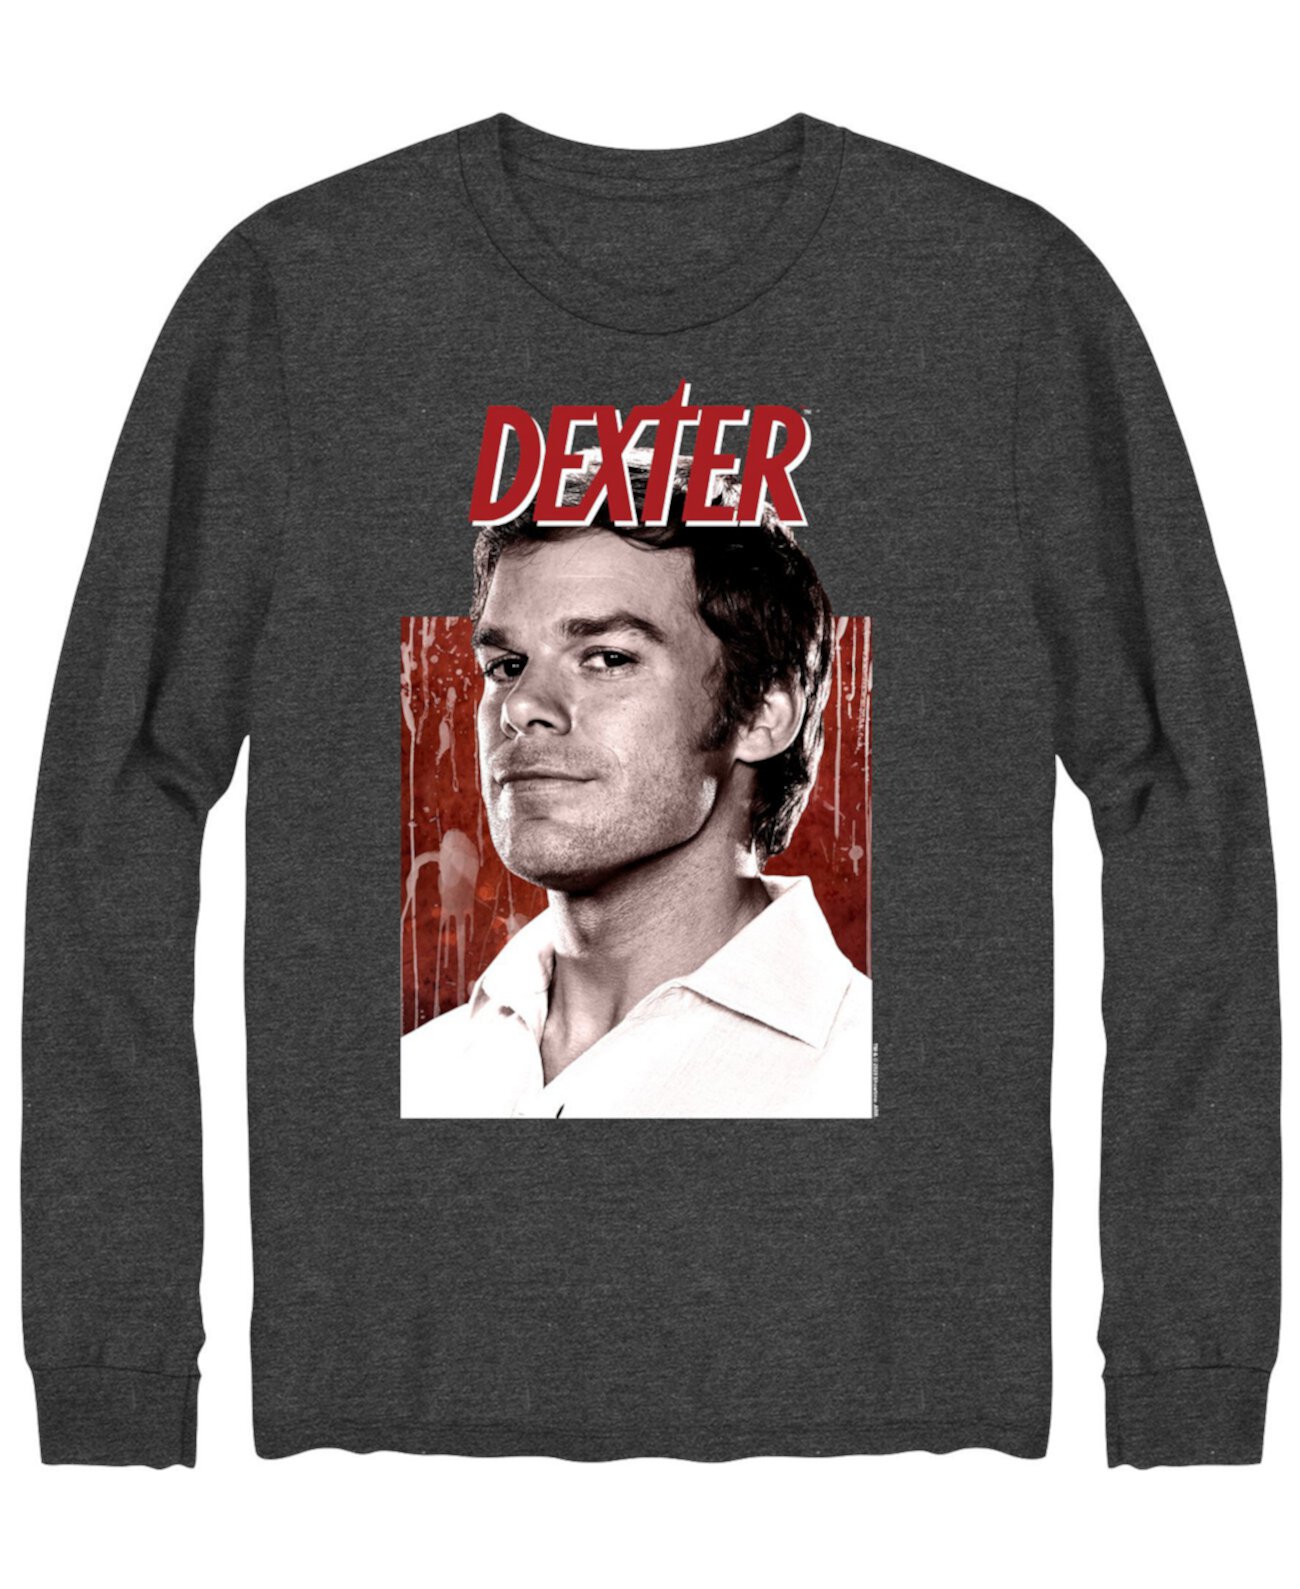 Мужская футболка с длинным рукавом Dexter Portrait Hybrid